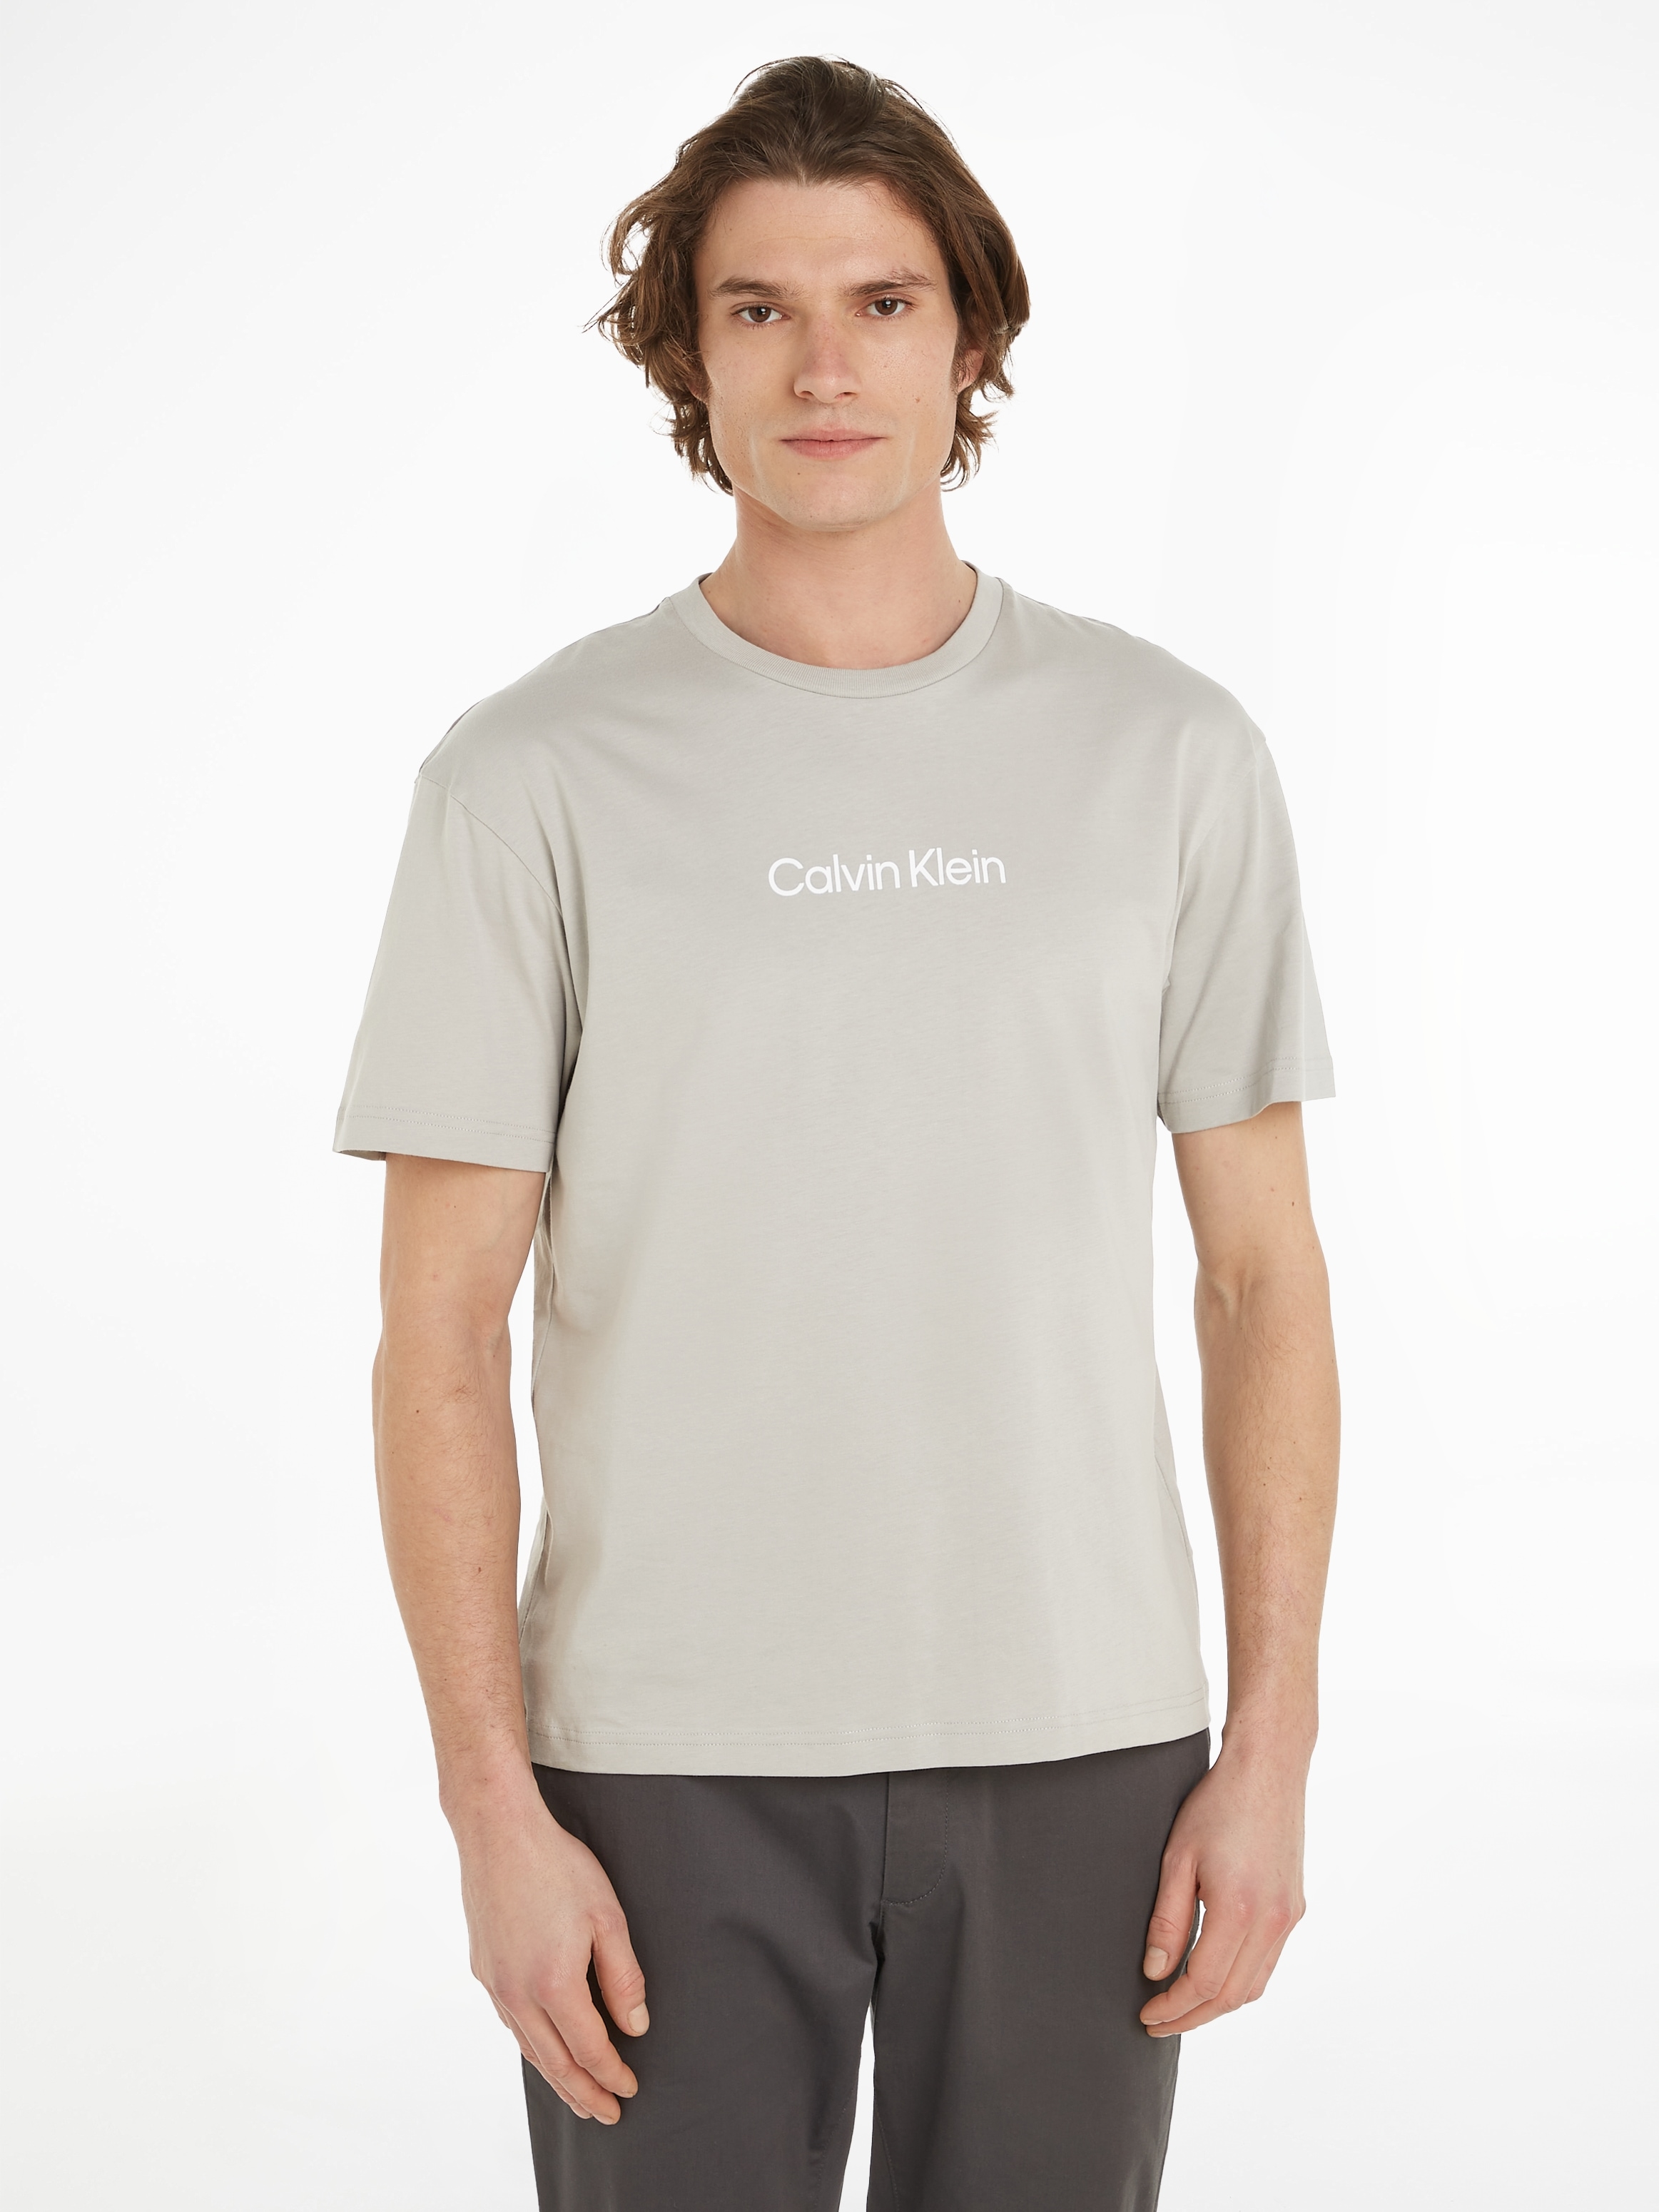 »HERO Klein aufgedrucktem mit T-SHIRT«, bei Markenlabel Calvin T-Shirt COMFORT ♕ LOGO